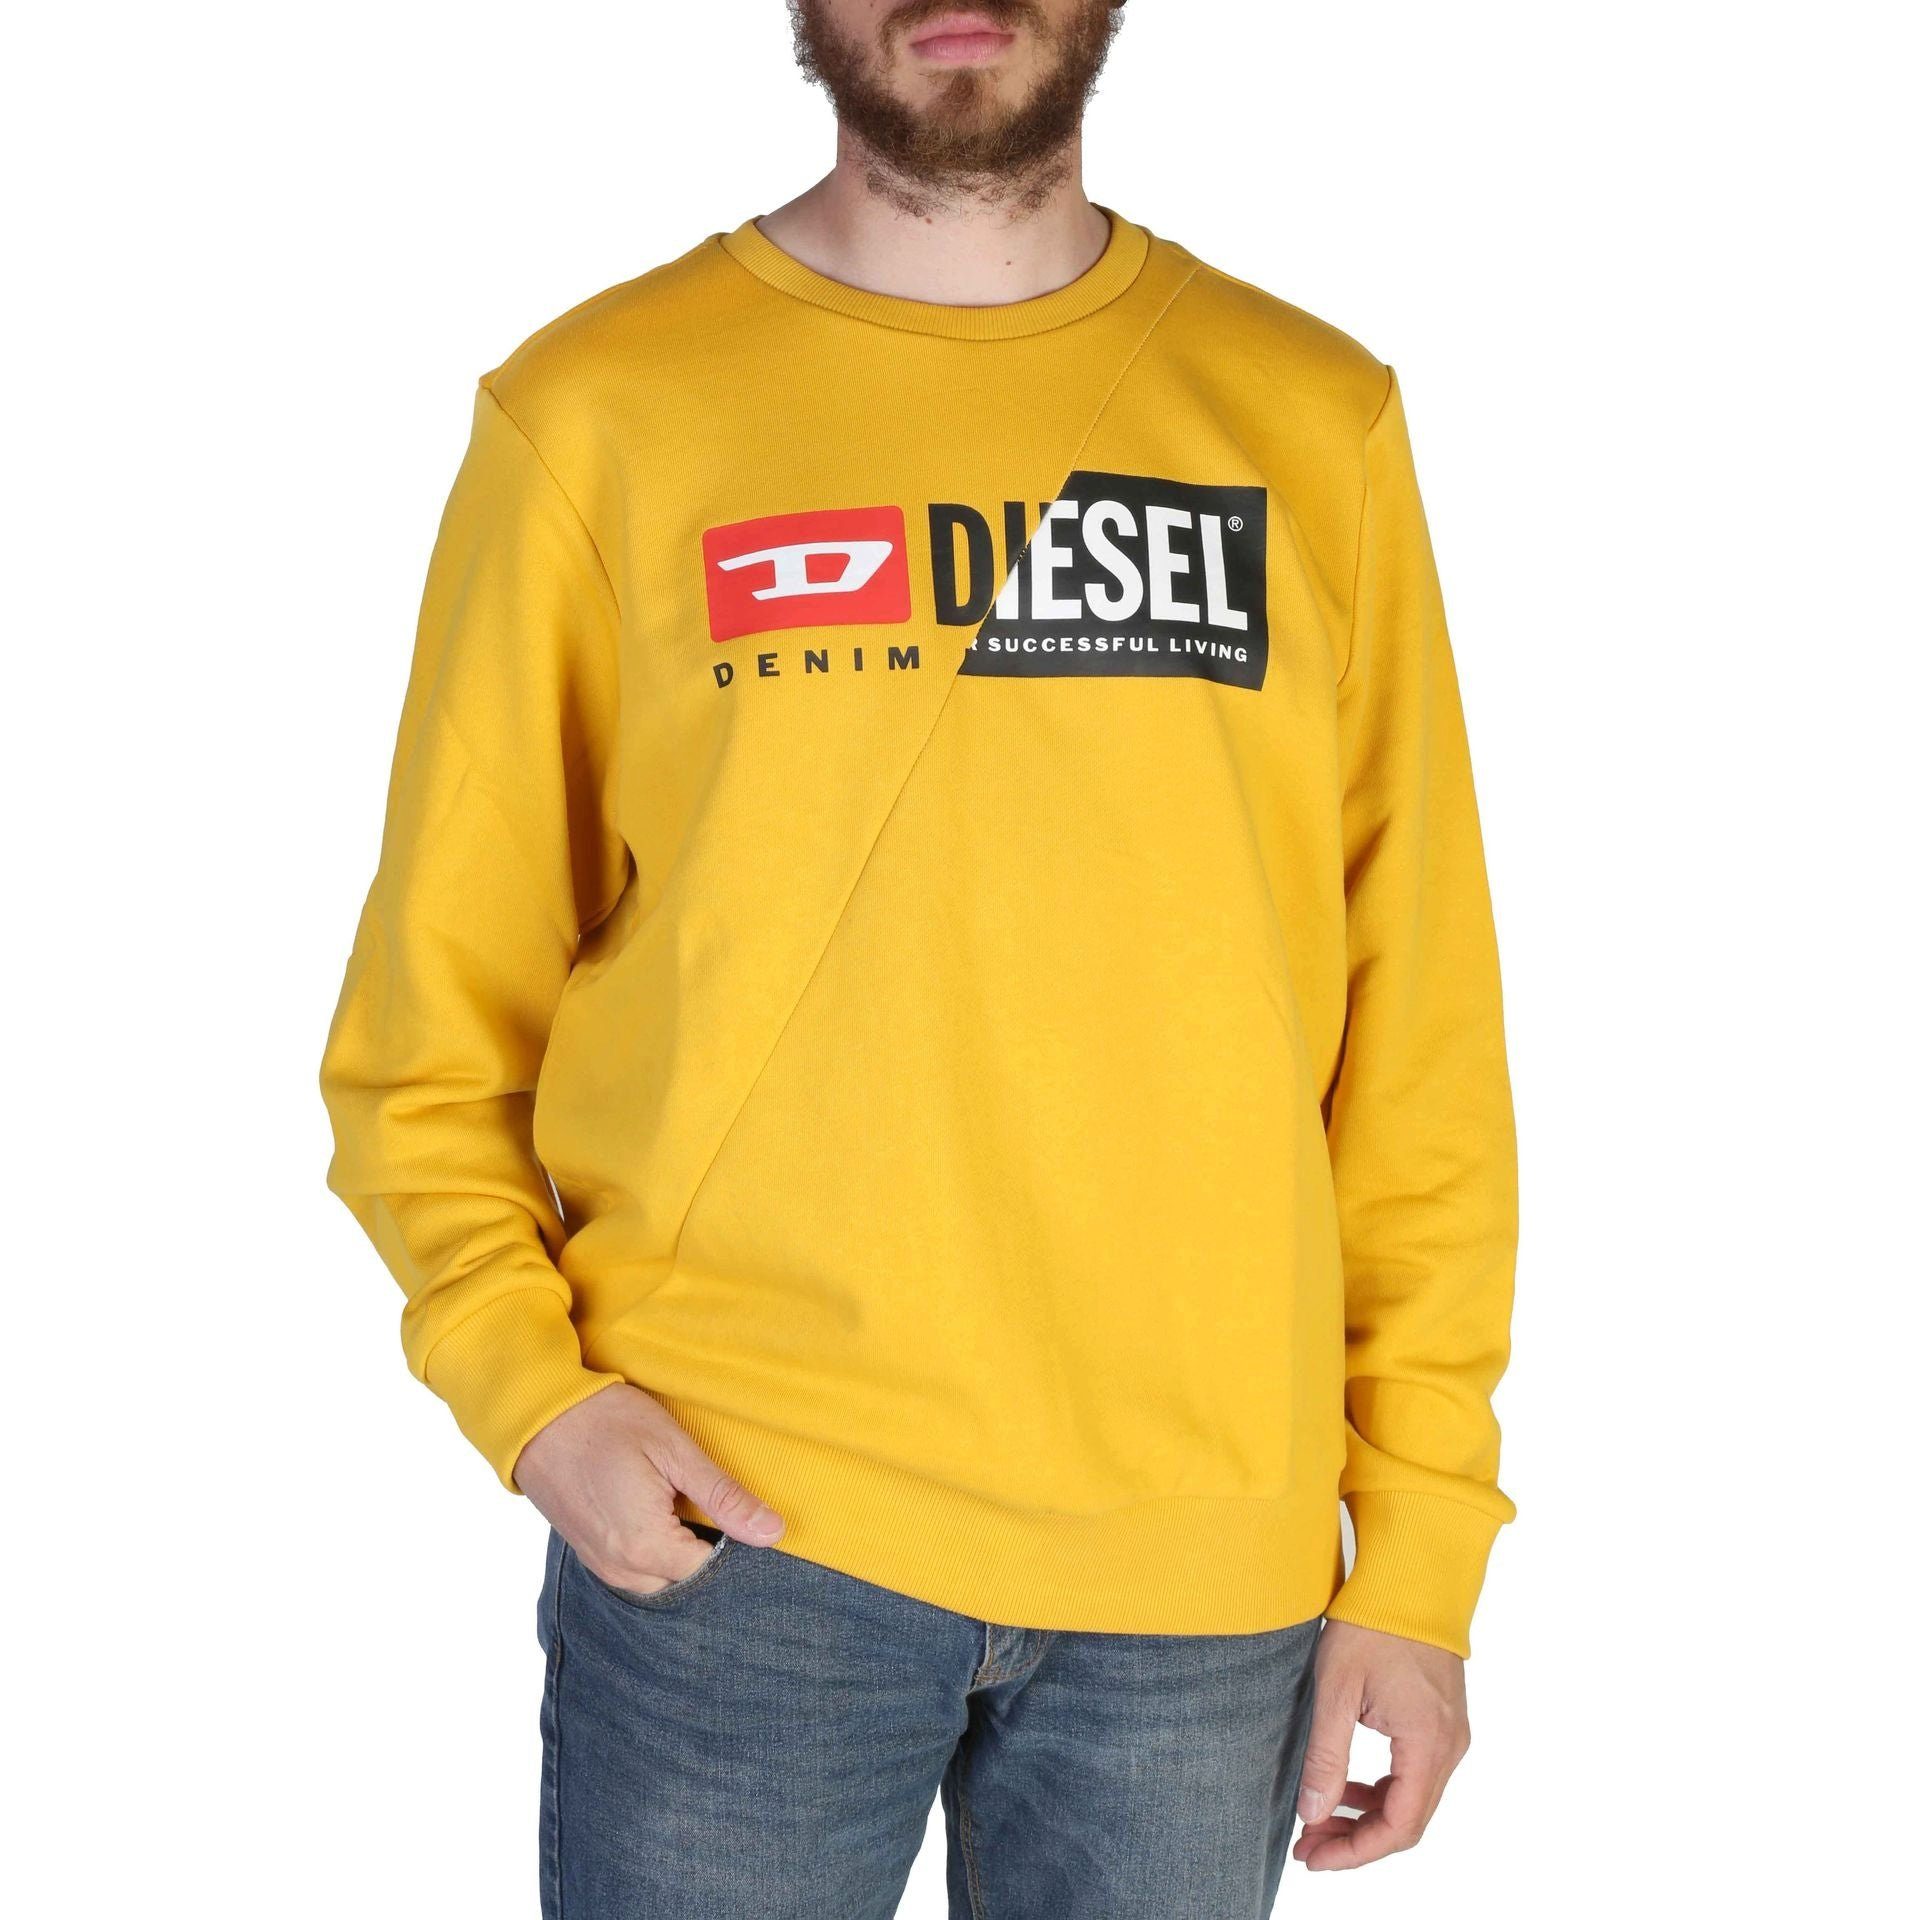 Diesel Sweatshirt Ihr Diesel Frühjahr/Sommer Gelb wartet! neues Herren Sweatshirt Komfort Stil und Diesel Kollektion, - Sweatshirt